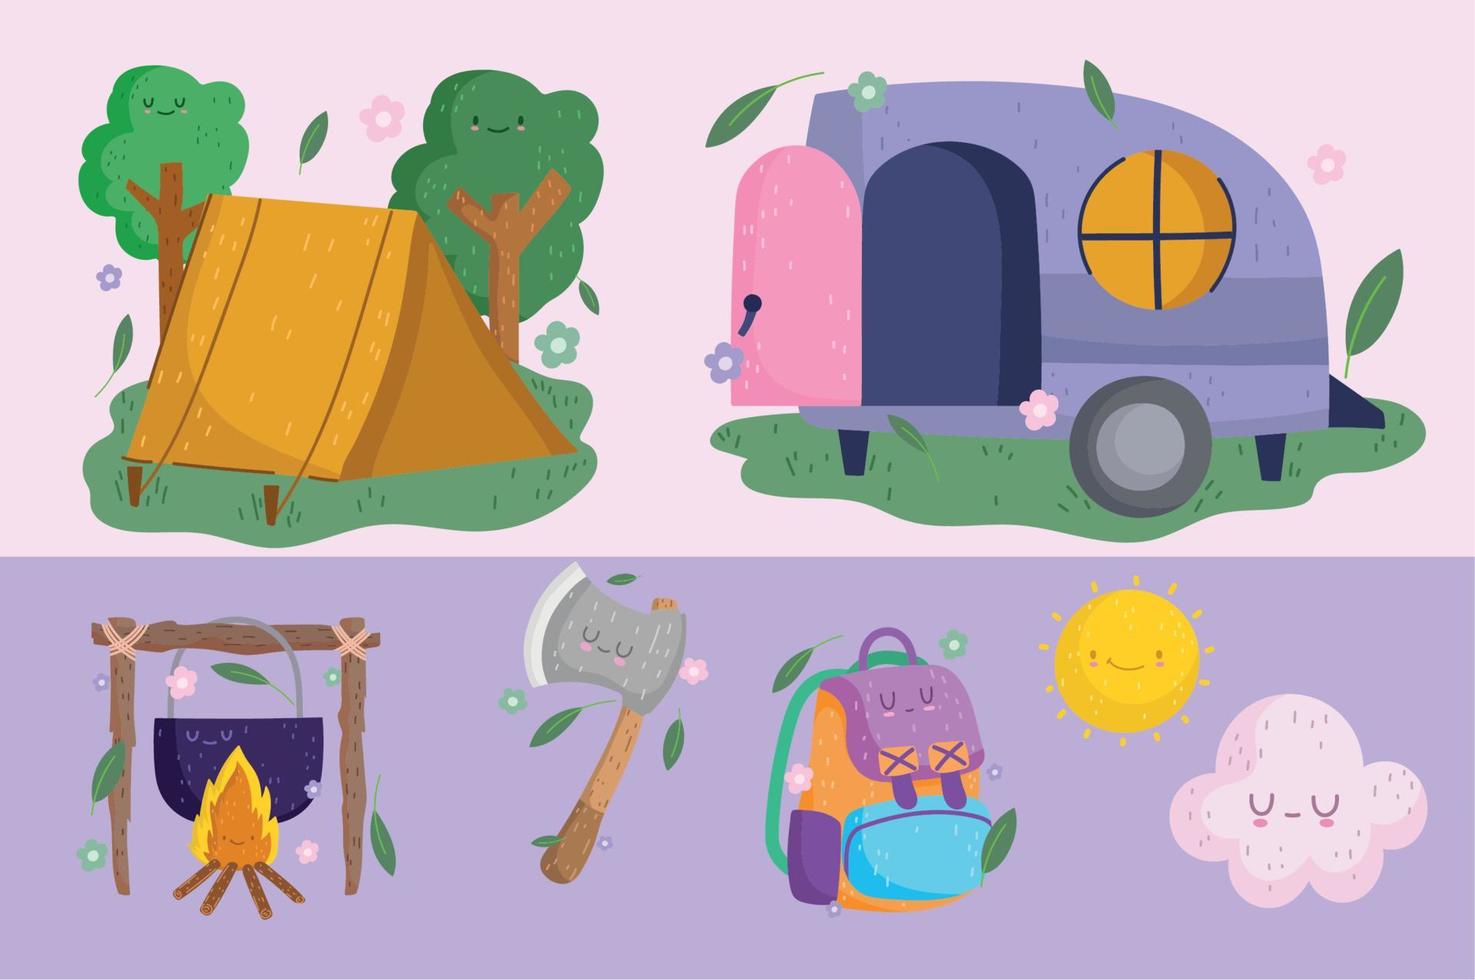 camping, iconos camper tienda hacha mochila olla hoguera en estilo de dibujos animados vector